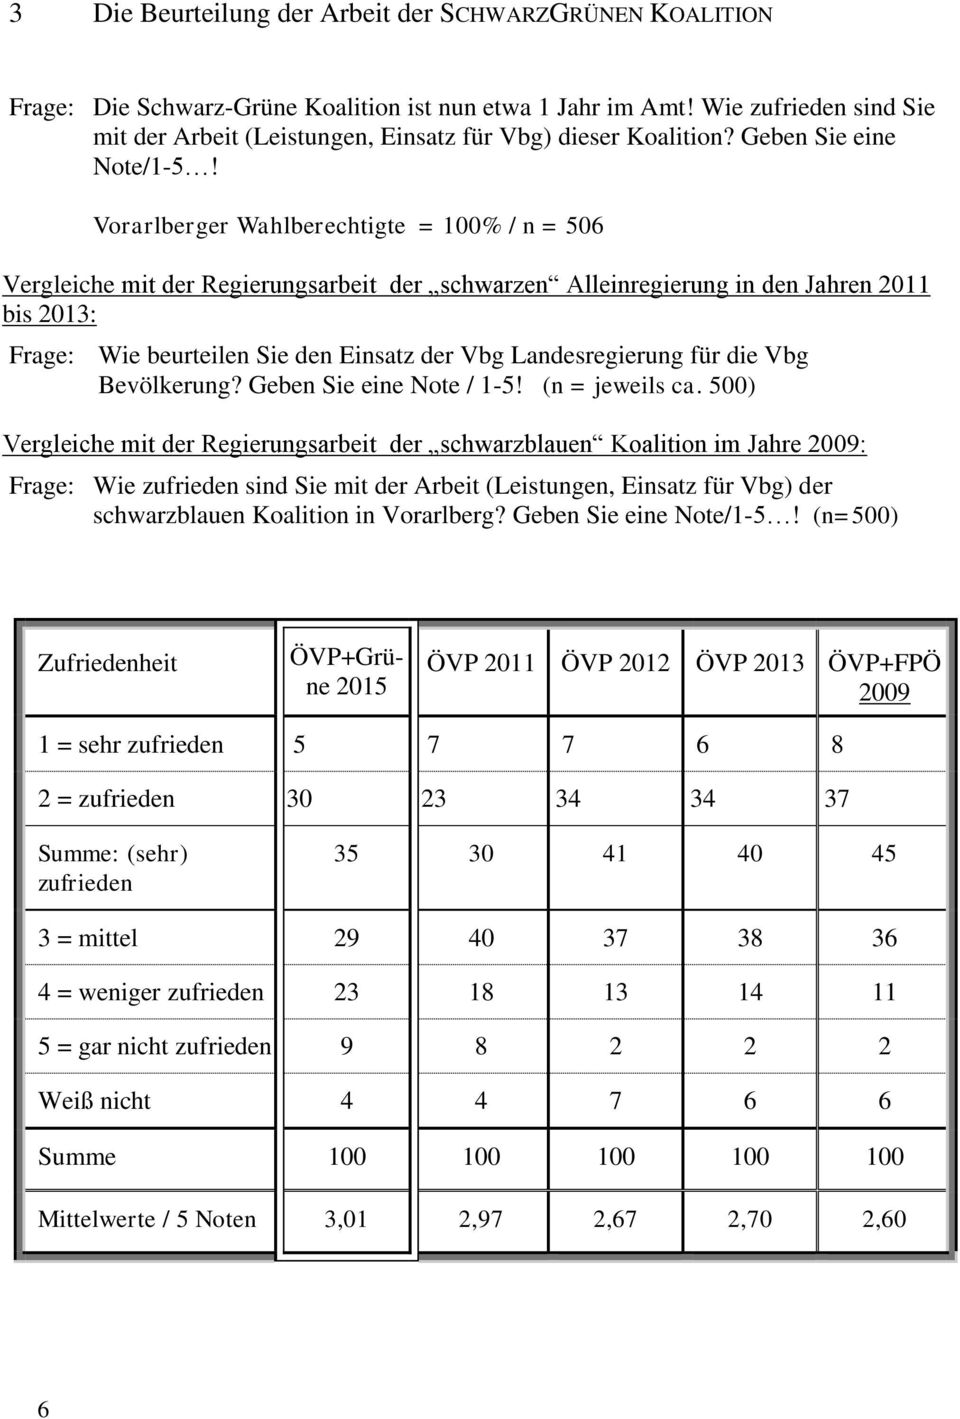 Vorarlberger Wahlberechtigte = 100% / n = 506 Vergleiche mit der Regierungsarbeit der schwarzen Alleinregierung in den Jahren 2011 bis 2013: Frage: Wie beurteilen Sie den Einsatz der Vbg